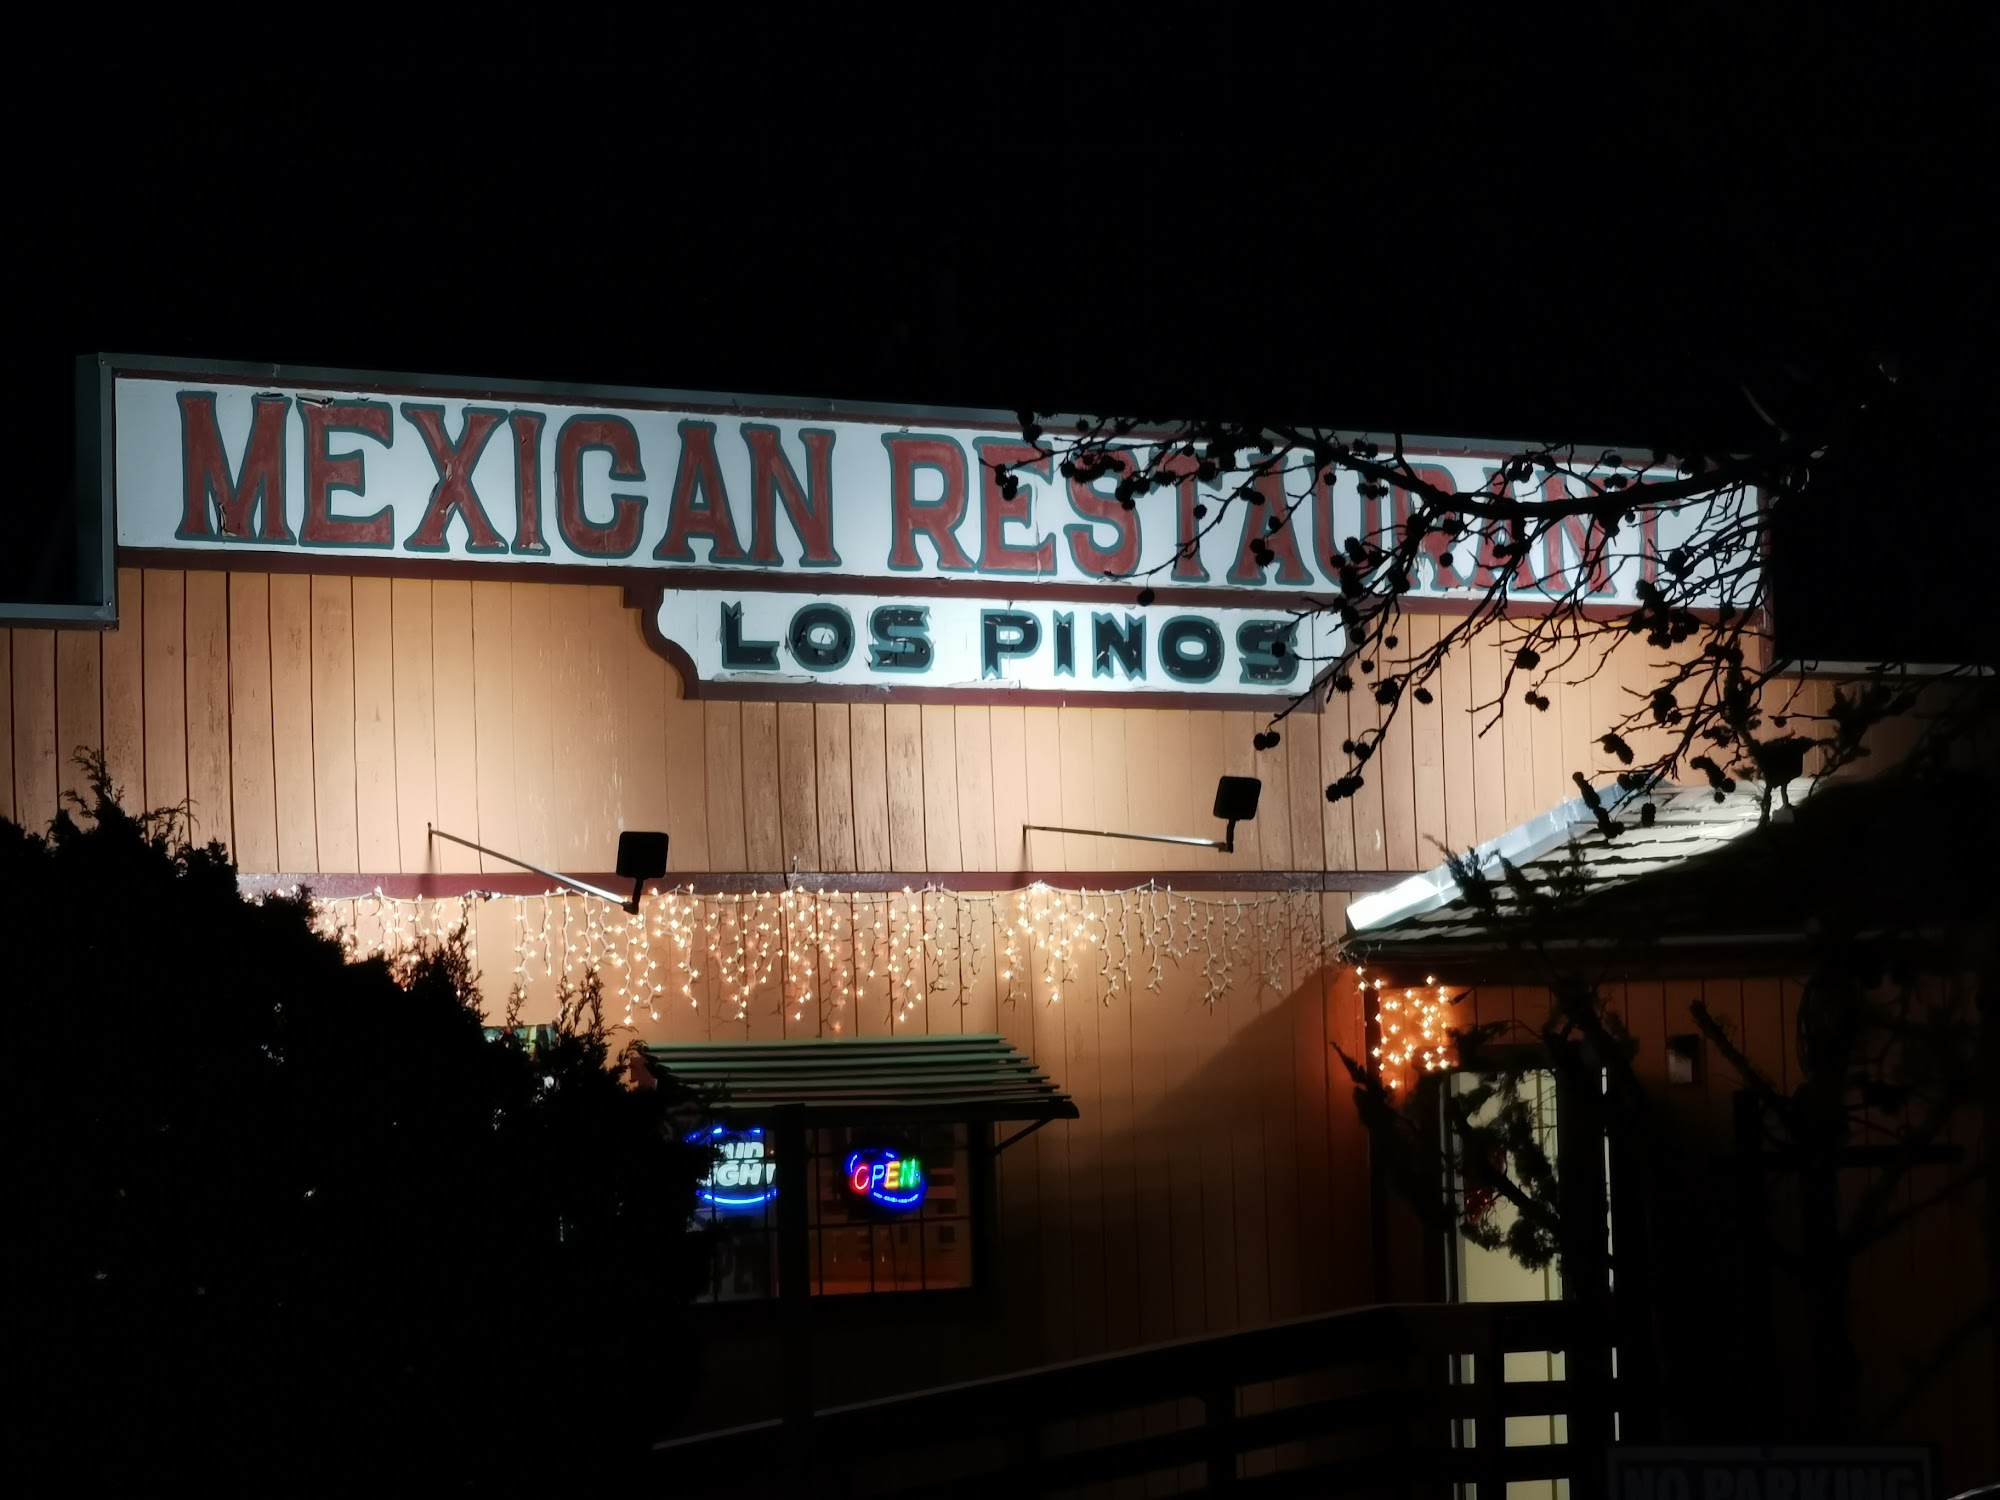 Los Pinos Mexican Restaurant